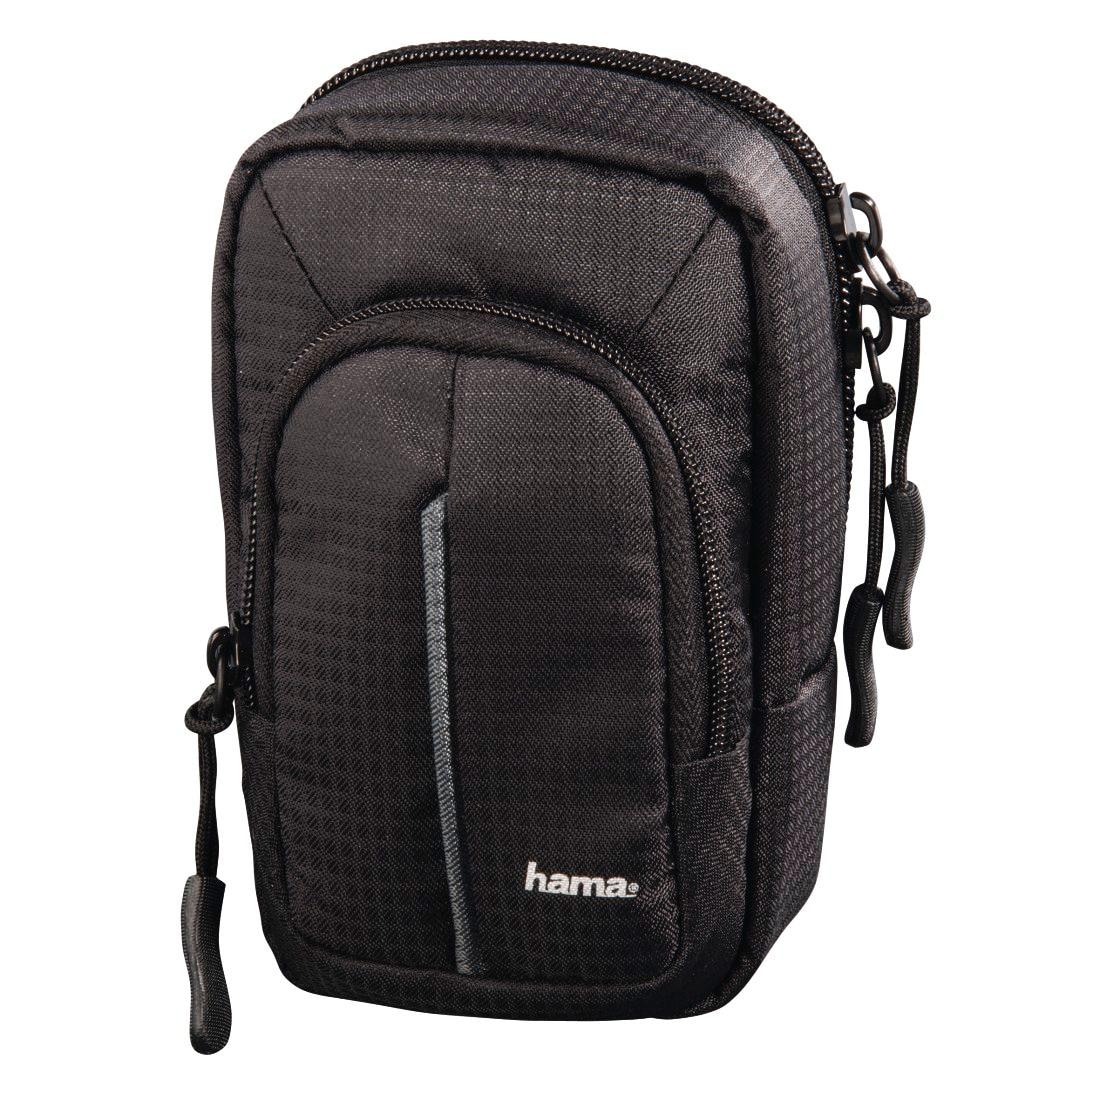 Hama Fototasche »Tasche für Digitalkameras mit Gürtelschlaufe Fancy Urban«, Größe 60H